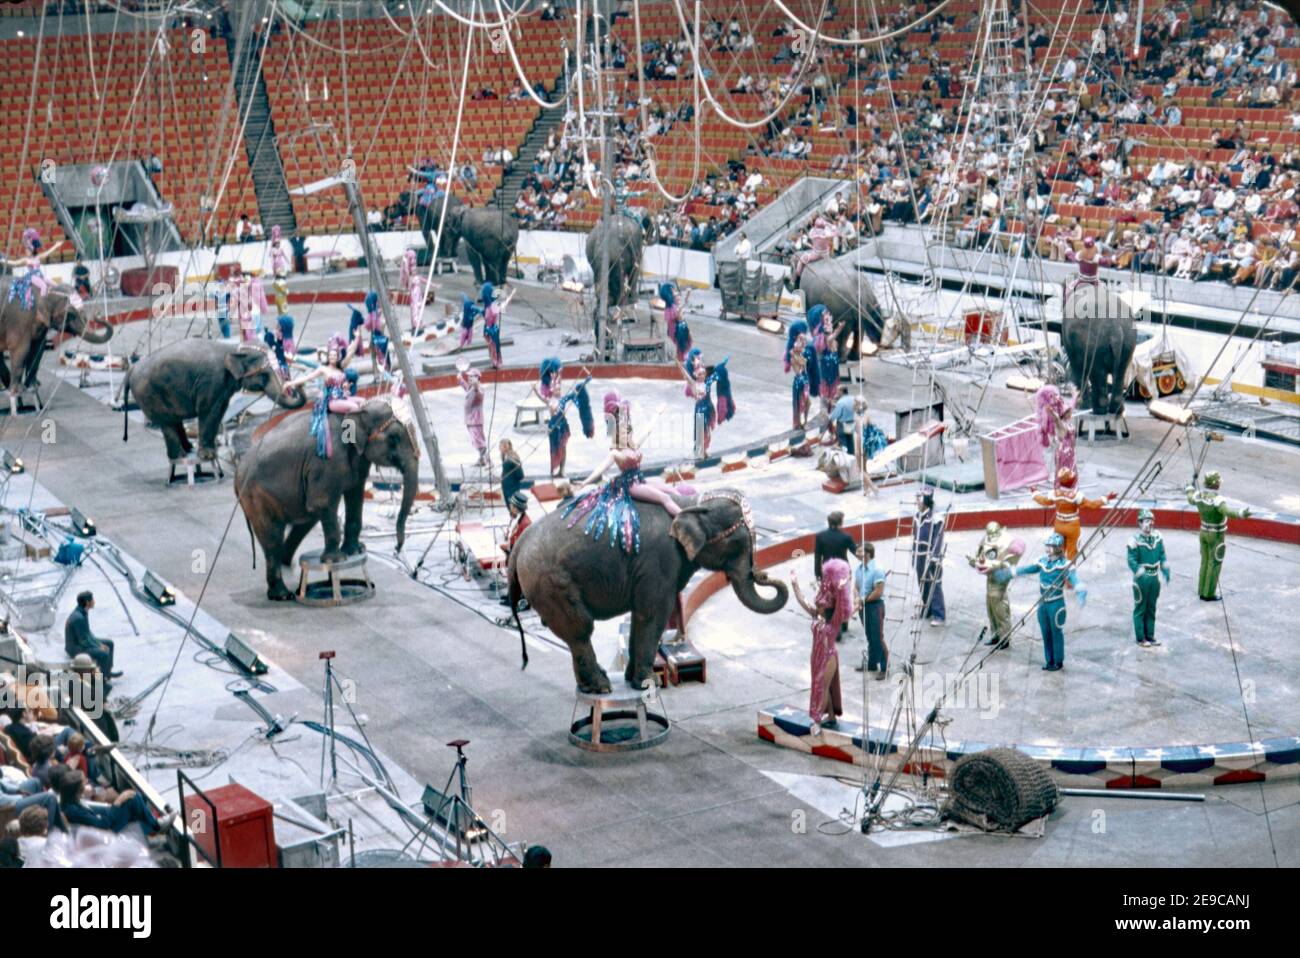 Los elefantes se llevan a la arena en el anillo de tres anillos Ringling Bros y Barnum y Bailey Circus los EE.UU. En 1974. Fue llamado 'el mayor espectáculo de la Tierra'. Los cambios en las actitudes en el uso de los animales para el entretenimiento han significado la retirada del desempeño para animales como el elefante. Ringling Bros y Barnum y Bailey Circus comenzaron ese proceso en 2015, cuando la empresa matriz del circo, Feld Entertainment, anunció por primera vez que iba a eliminar gradualmente su uso de elefantes en ejecución. Los elefantes se trasladan a un nuevo centro de conservación en Florida en 2021. Foto de stock